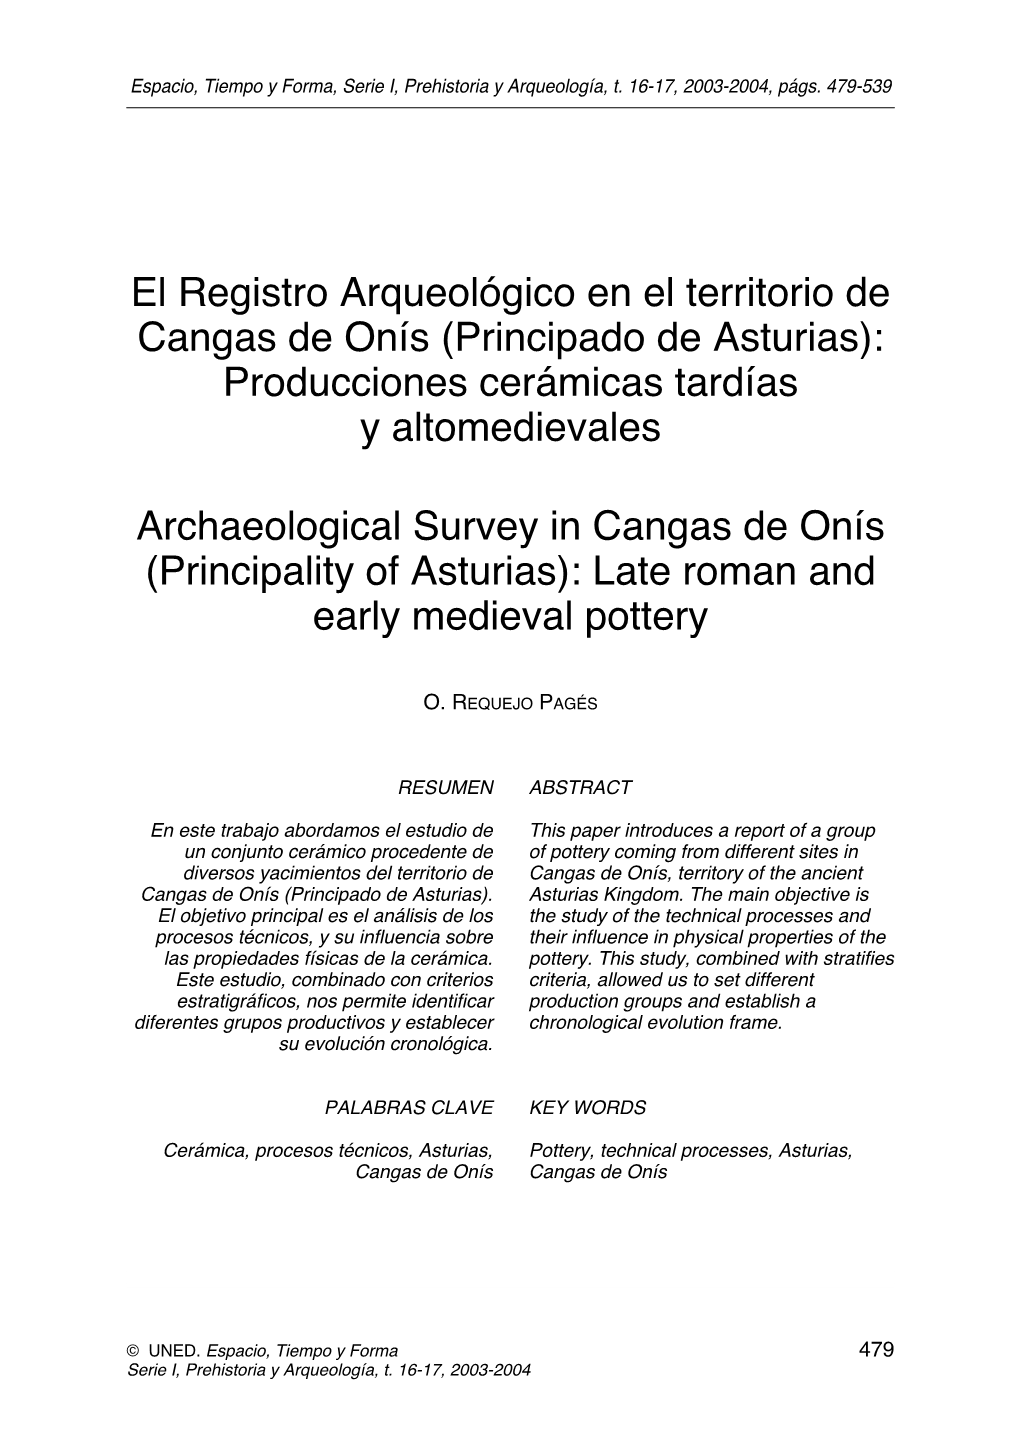 El Registro Arqueológico En El Territorio De Cangas De Onís (Principado De Asturias): Producciones Cerámicas Tardías Y Altomedievales